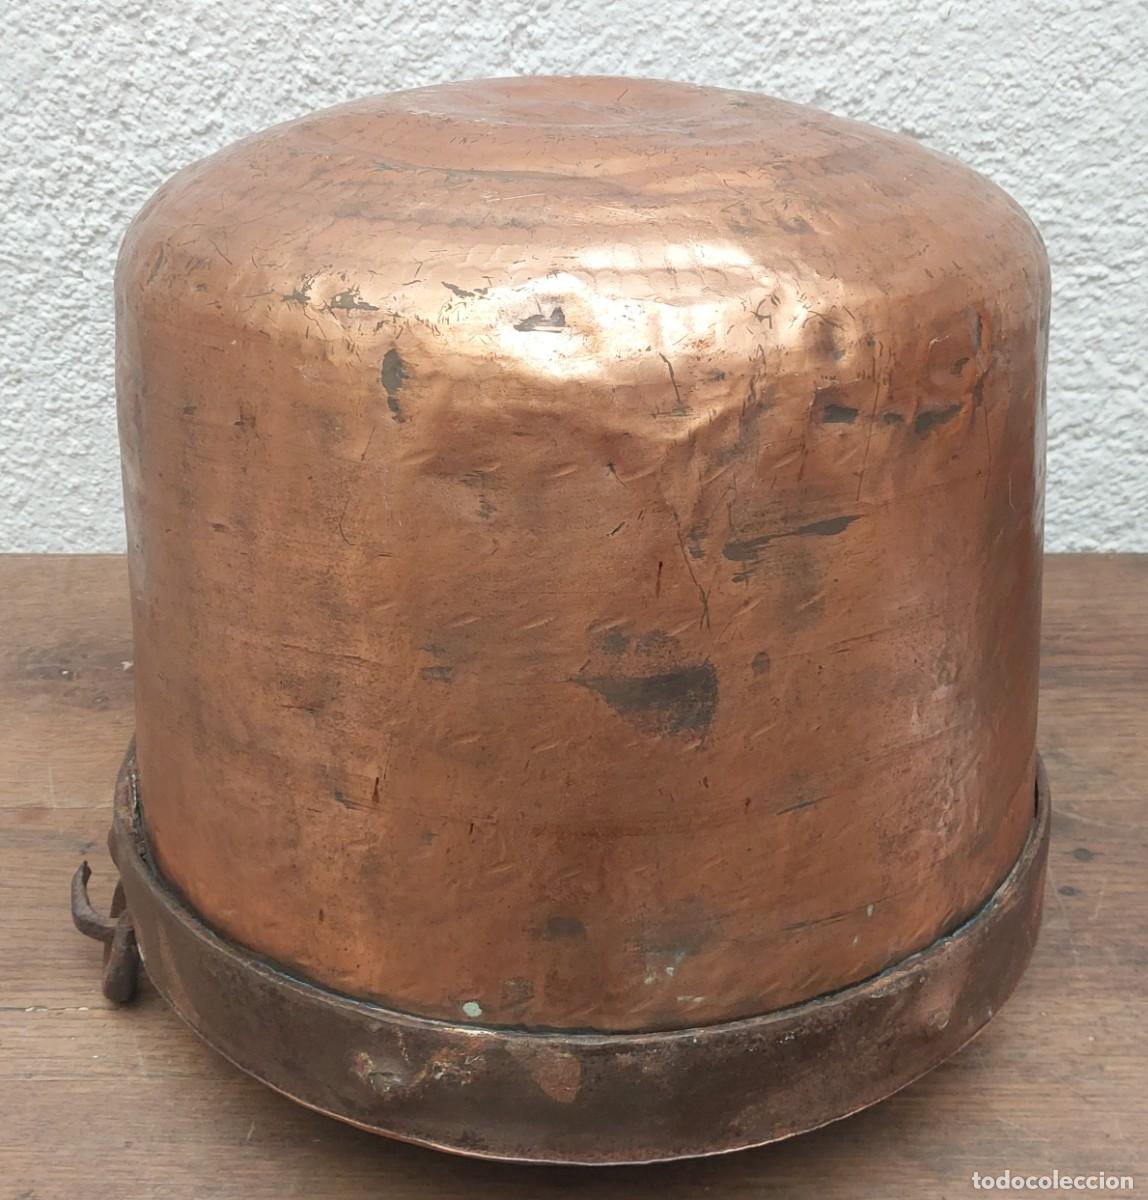 Olla grande de cobre estañado, siglo XIX en venta en Pamono